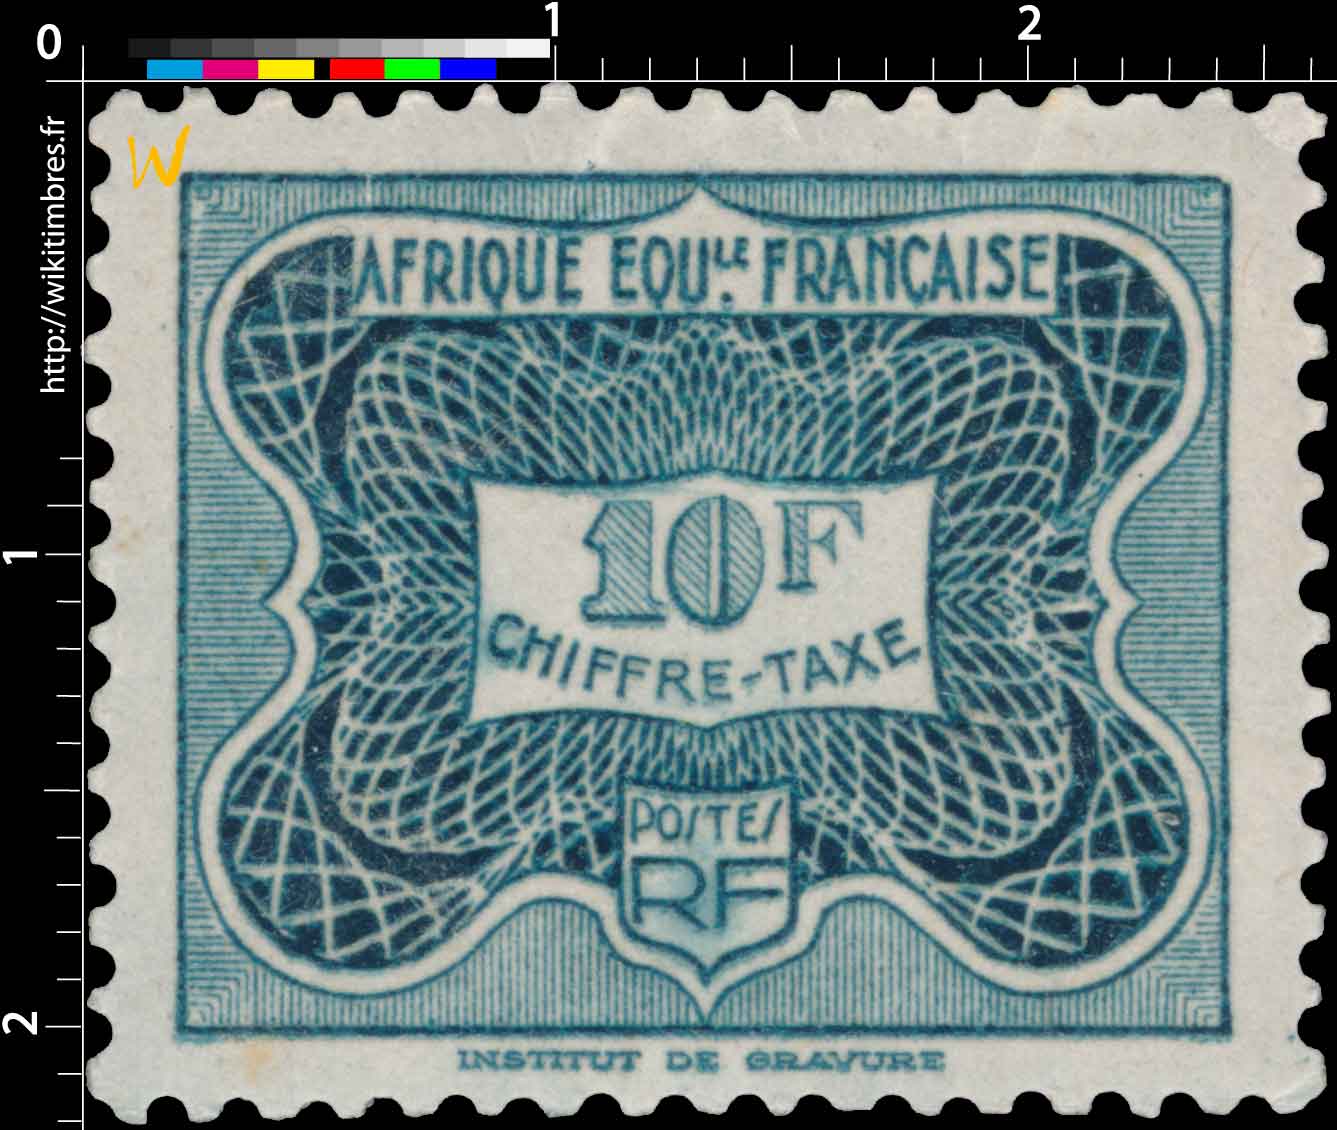 Chiffre taxe Afrique Équatoriale Française